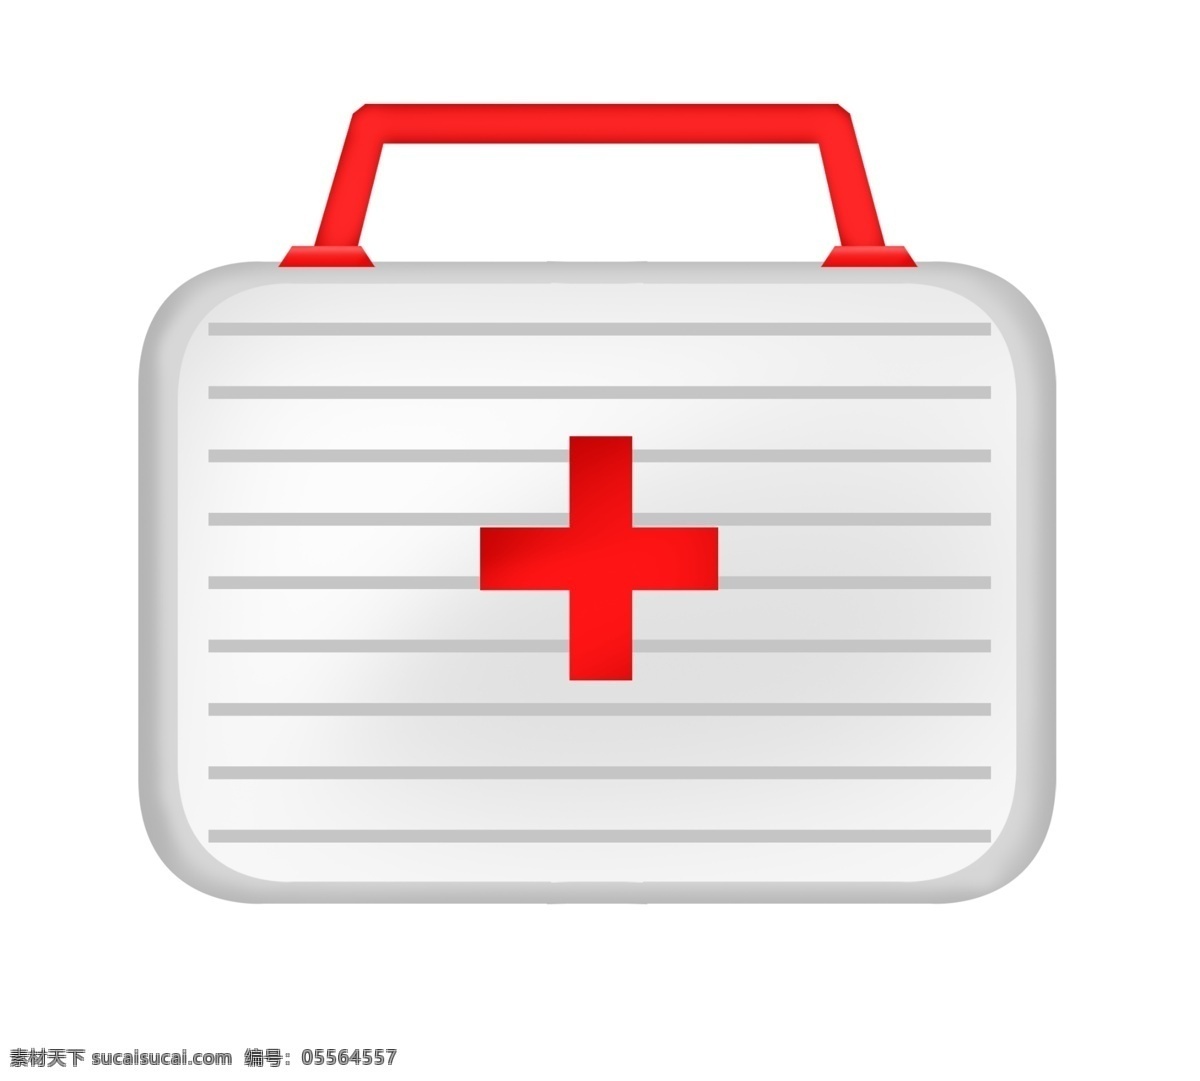 变色 医疗 药箱 插画 装饰用品 医疗用品 白色药箱 红色十字 医疗设备 简约图形 医疗治疗 医疗设施